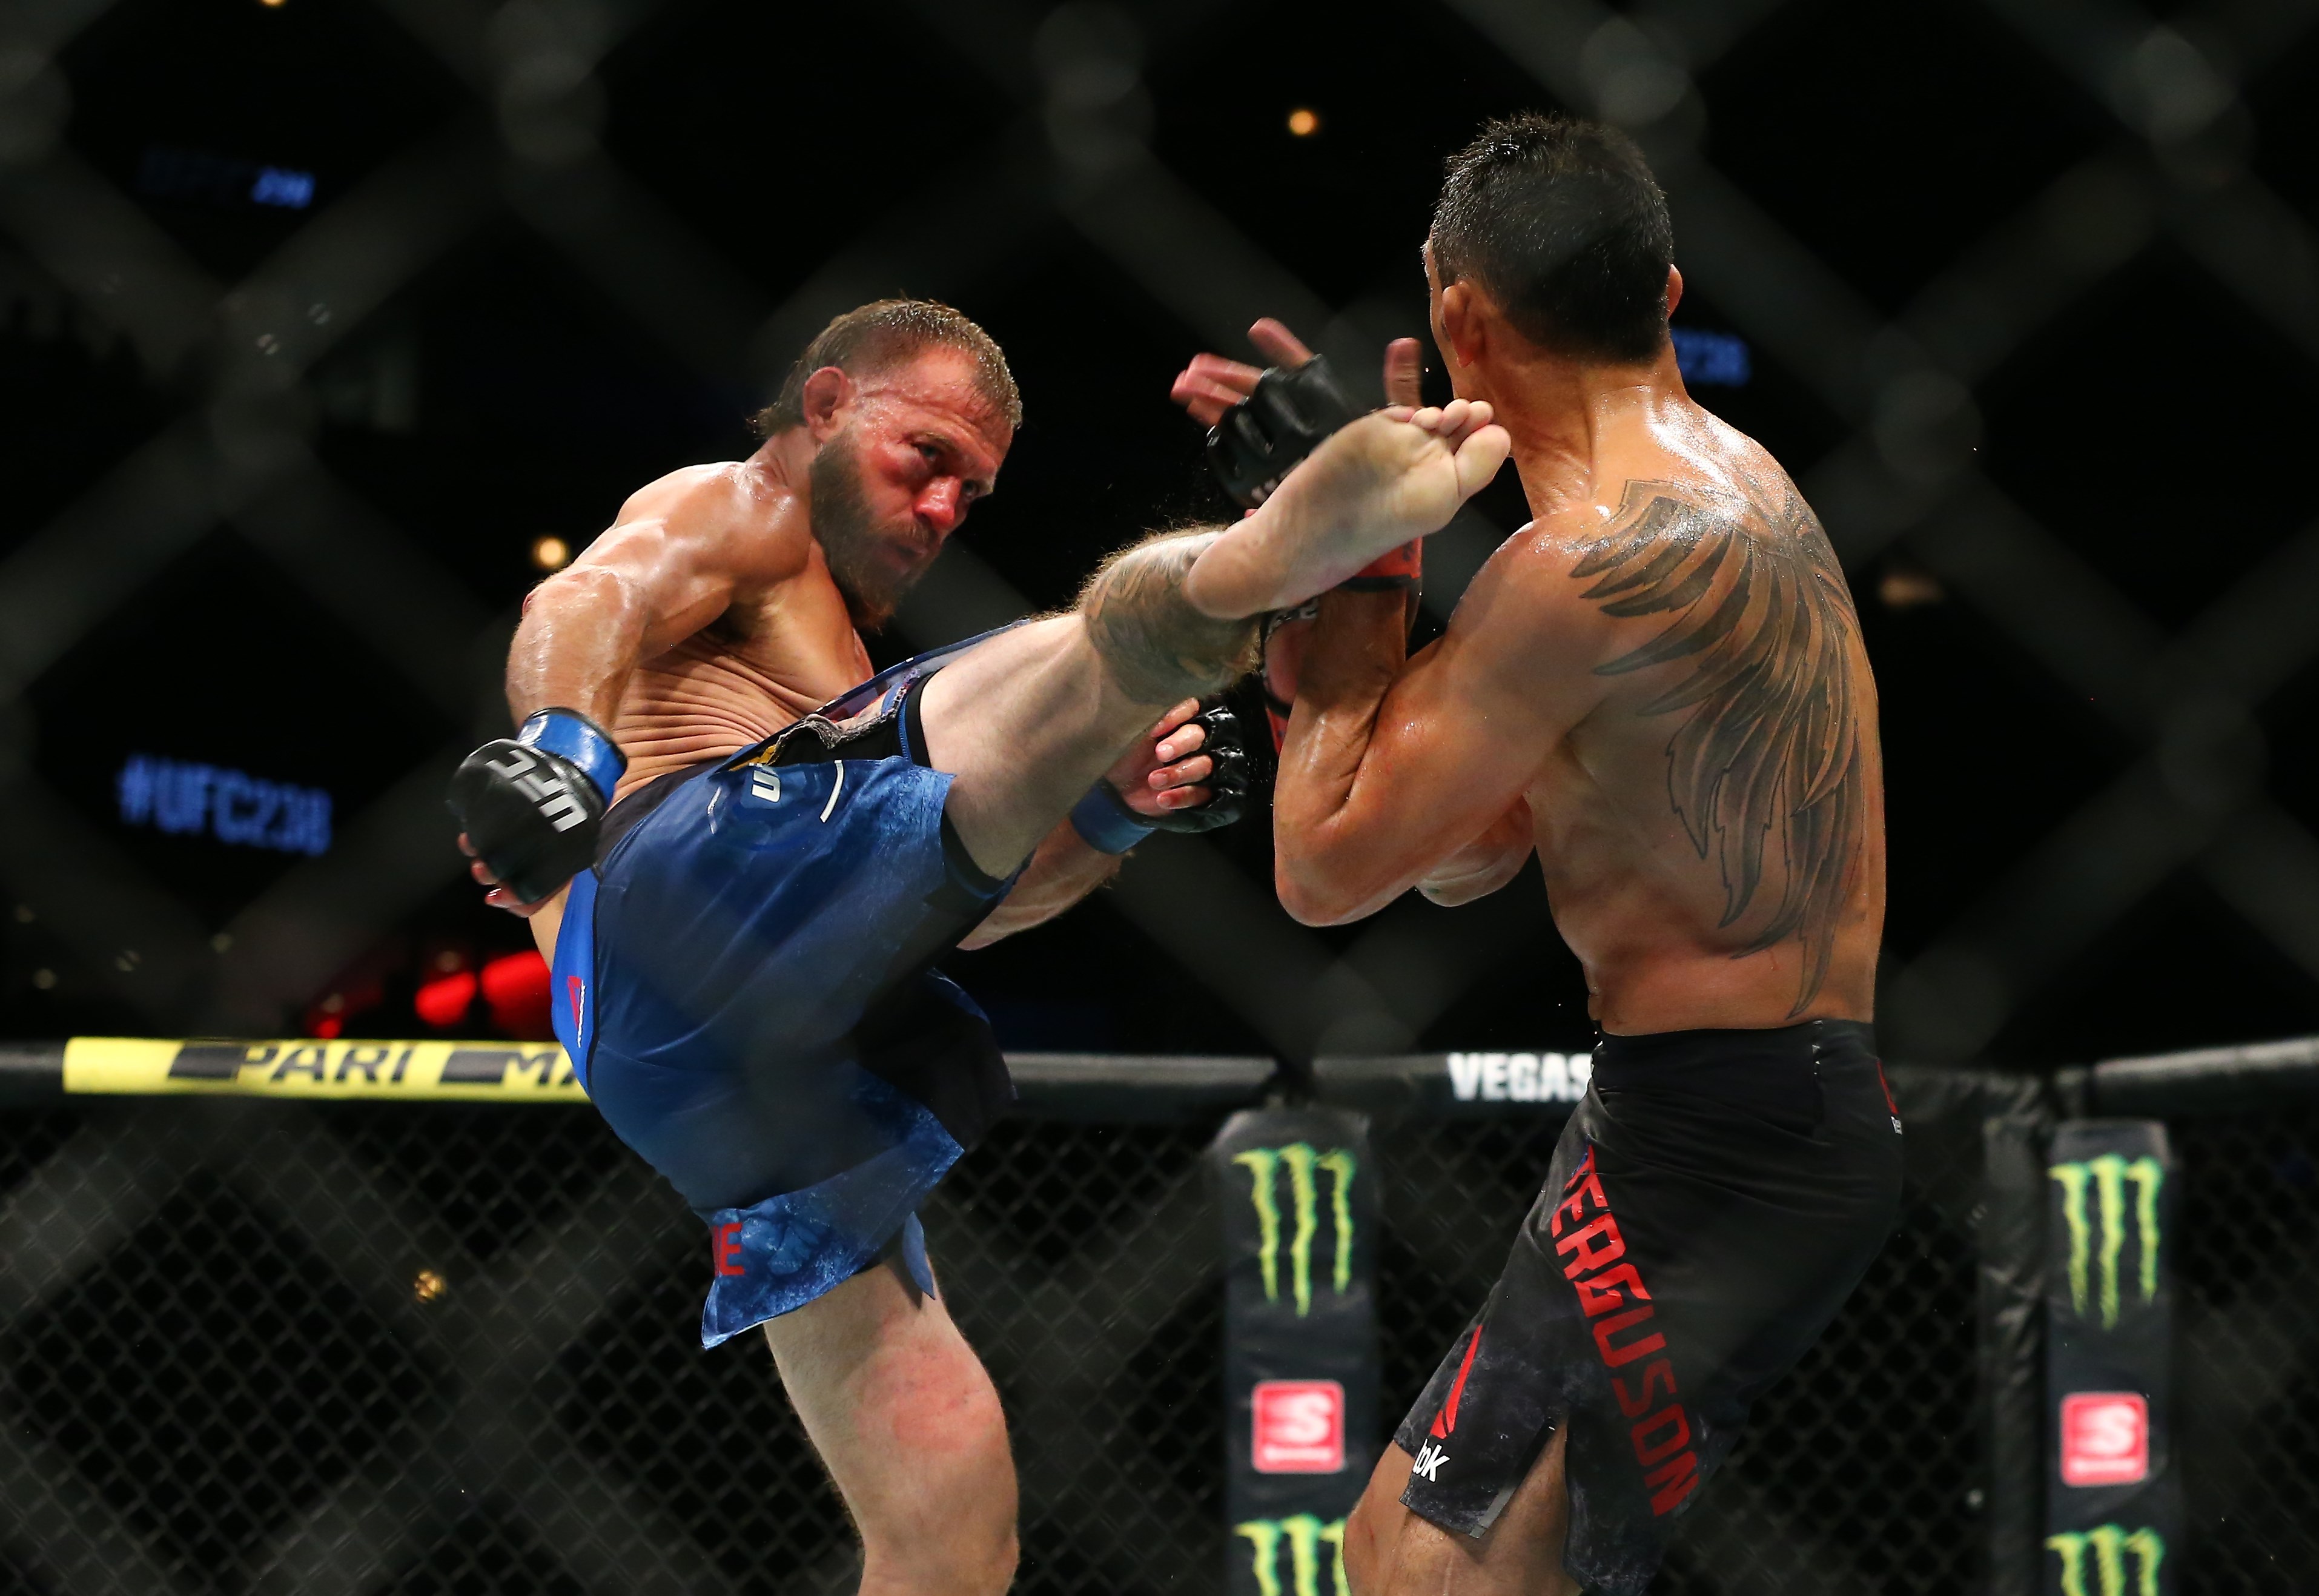 La UFC es uno de los deportes que deseaban retar al coronavirus. (Foto Prensa Libre: AFP)